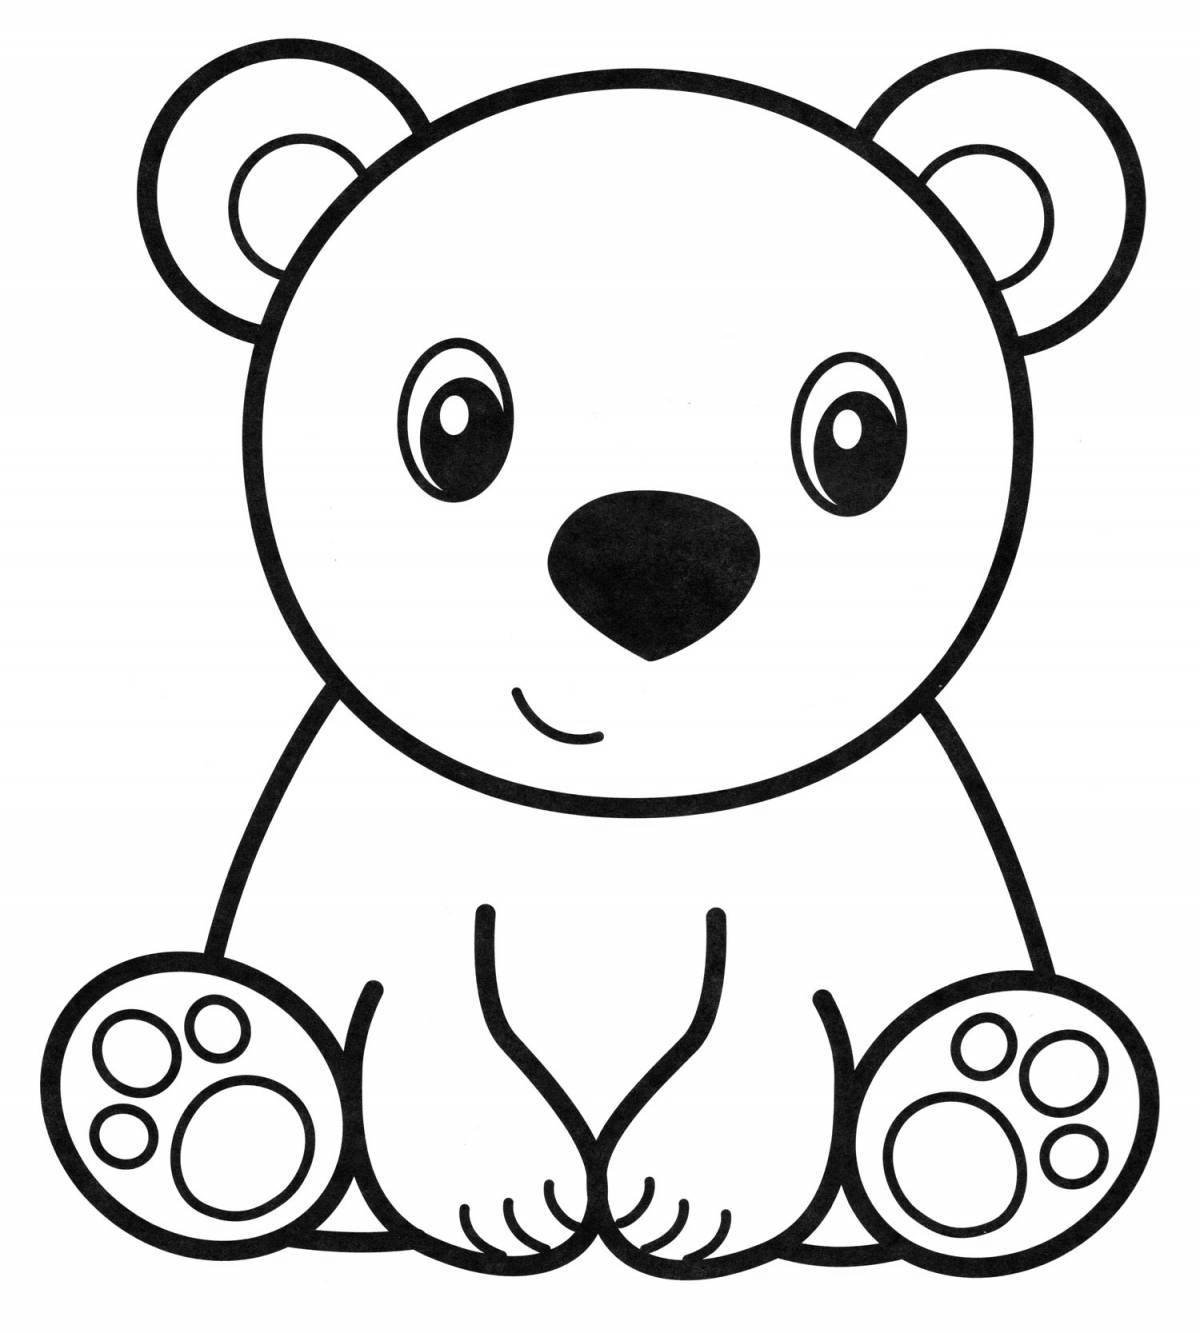 Magic bear coloring book for kids